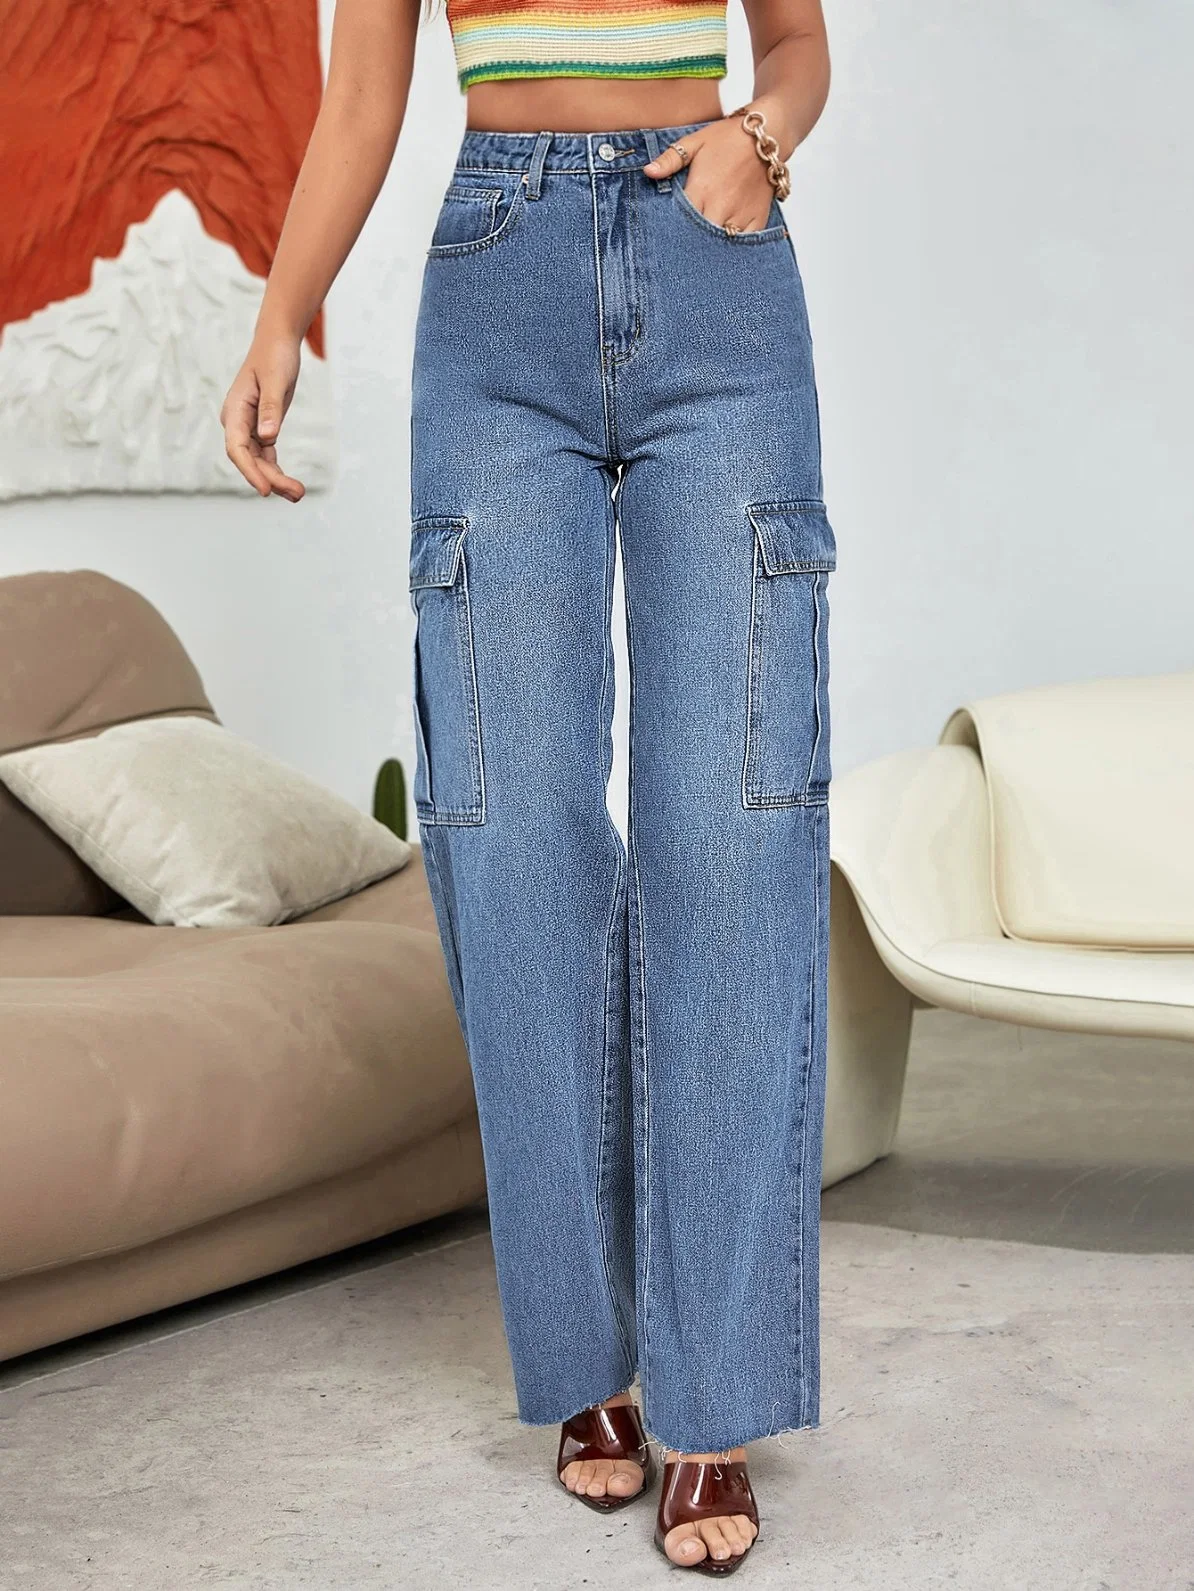 Новая торговая марка моды джинсы дизайн High-Waisted боковой карман для опрокидывания потертых джинсах прямой ногой кромки